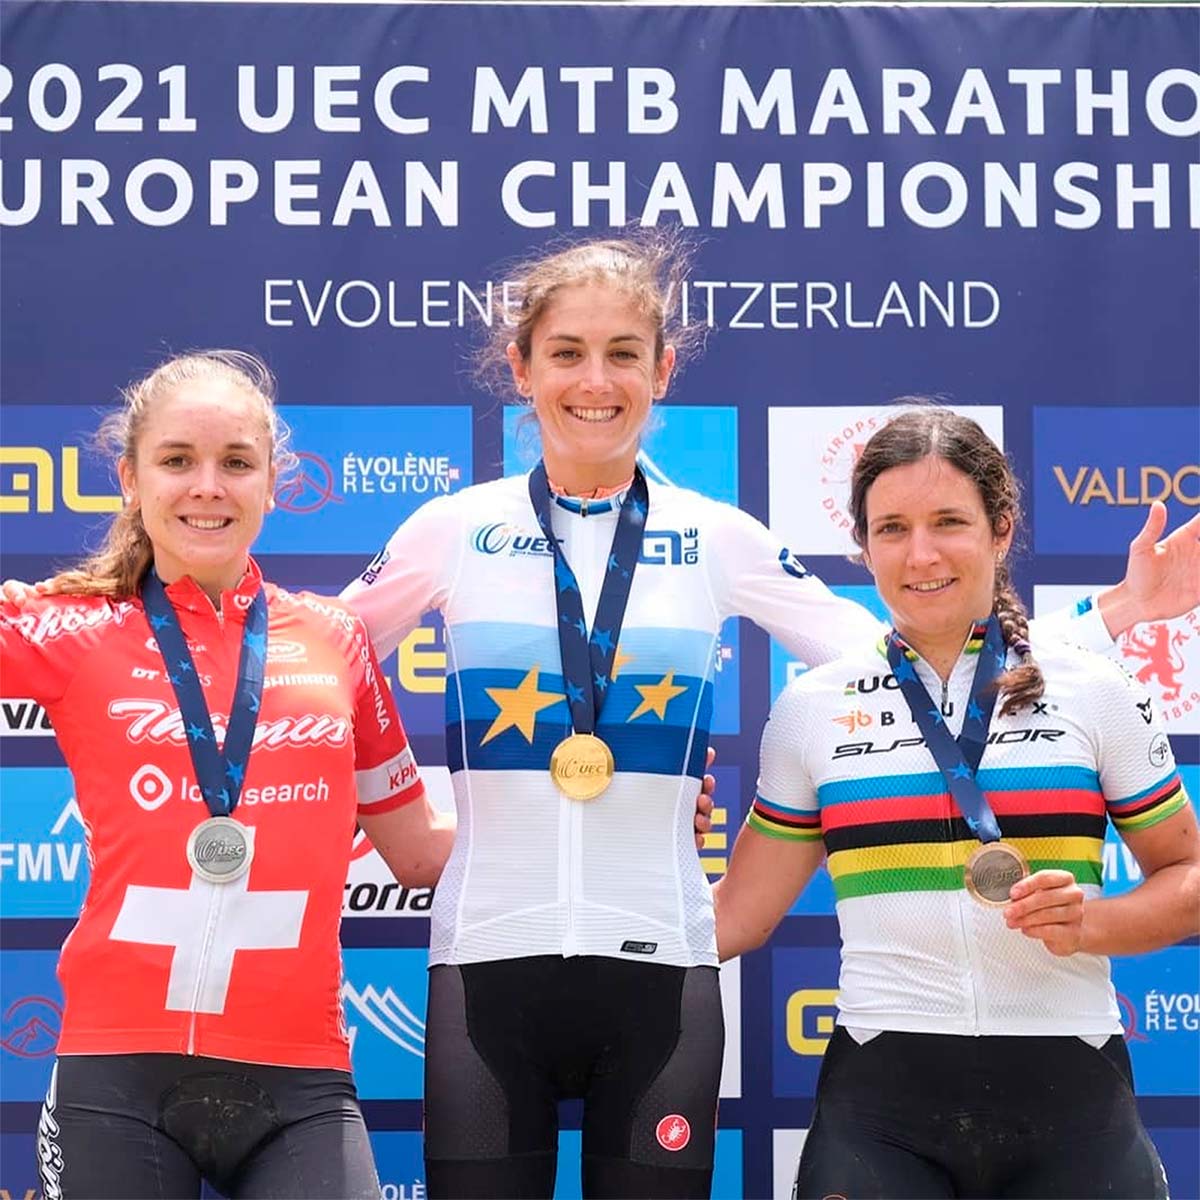 En TodoMountainBike: Natalia Fischer es la campeona de Europa de XC Maratón de 2021